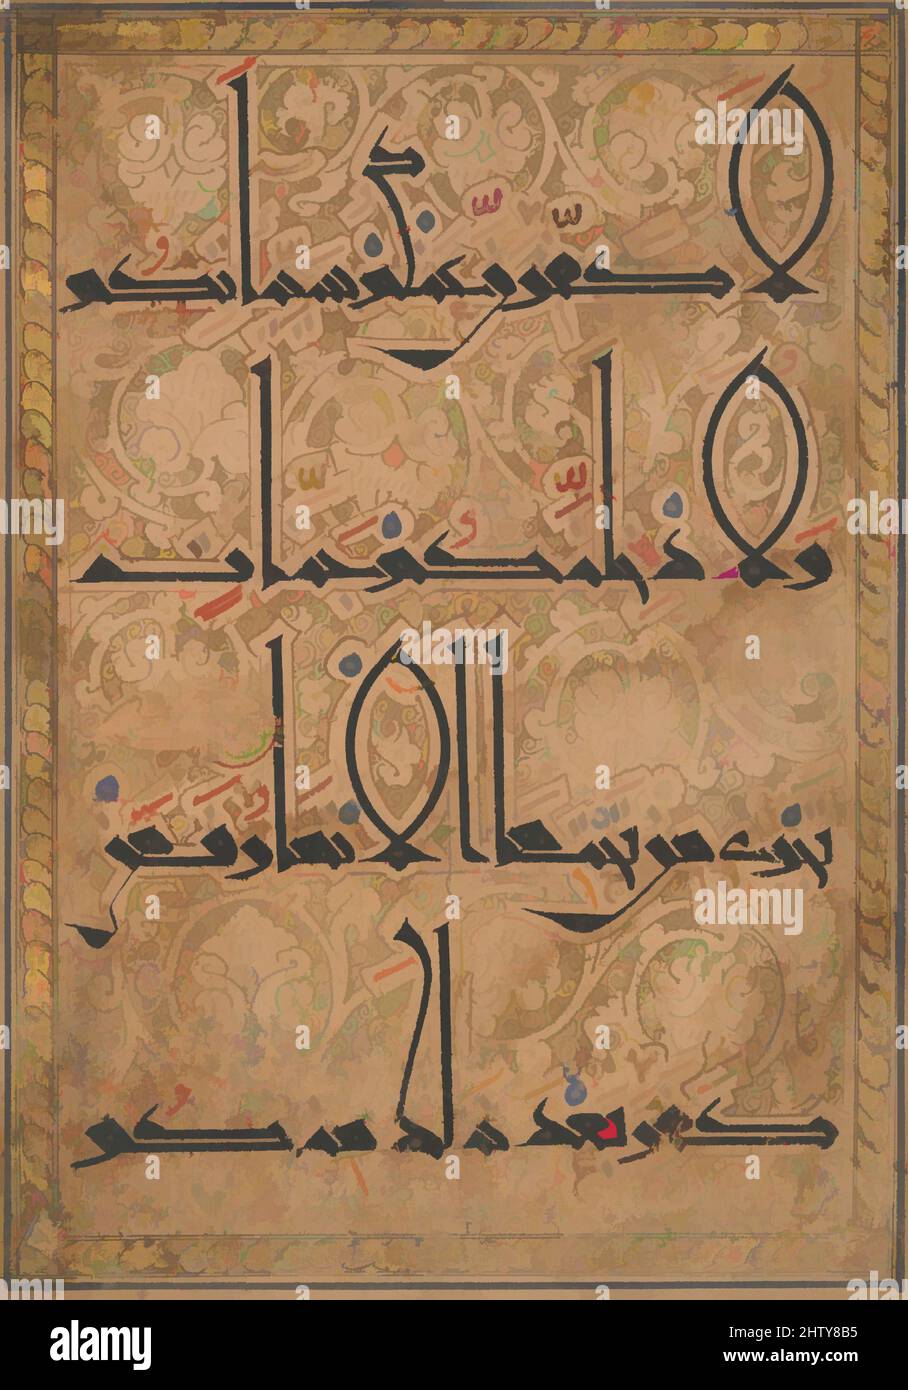 Kunst inspiriert von Folio aus einem Qur'an Manuskript, ca. 1180, dem östlichen Iran oder dem heutigen Afghanistan zugeschrieben, Tinte, opakes Aquarell und Gold auf Papier, H. 11 3/4 Zoll (29,8 cm), Codices, Dieses Folio aus einem zerstreuten Koran veranschaulicht den Übergang während der Seldschuken-Periode vom Koran, klassische Werke, die von Artotop mit einem Schuss Moderne modernisiert wurden. Formen, Farbe und Wert, auffällige visuelle Wirkung auf Kunst. Emotionen durch Freiheit von Kunstwerken auf zeitgemäße Weise. Eine zeitlose Botschaft, die eine wild kreative neue Richtung verfolgt. Künstler, die sich dem digitalen Medium zuwenden und die Artotop NFT erschaffen Stockfoto